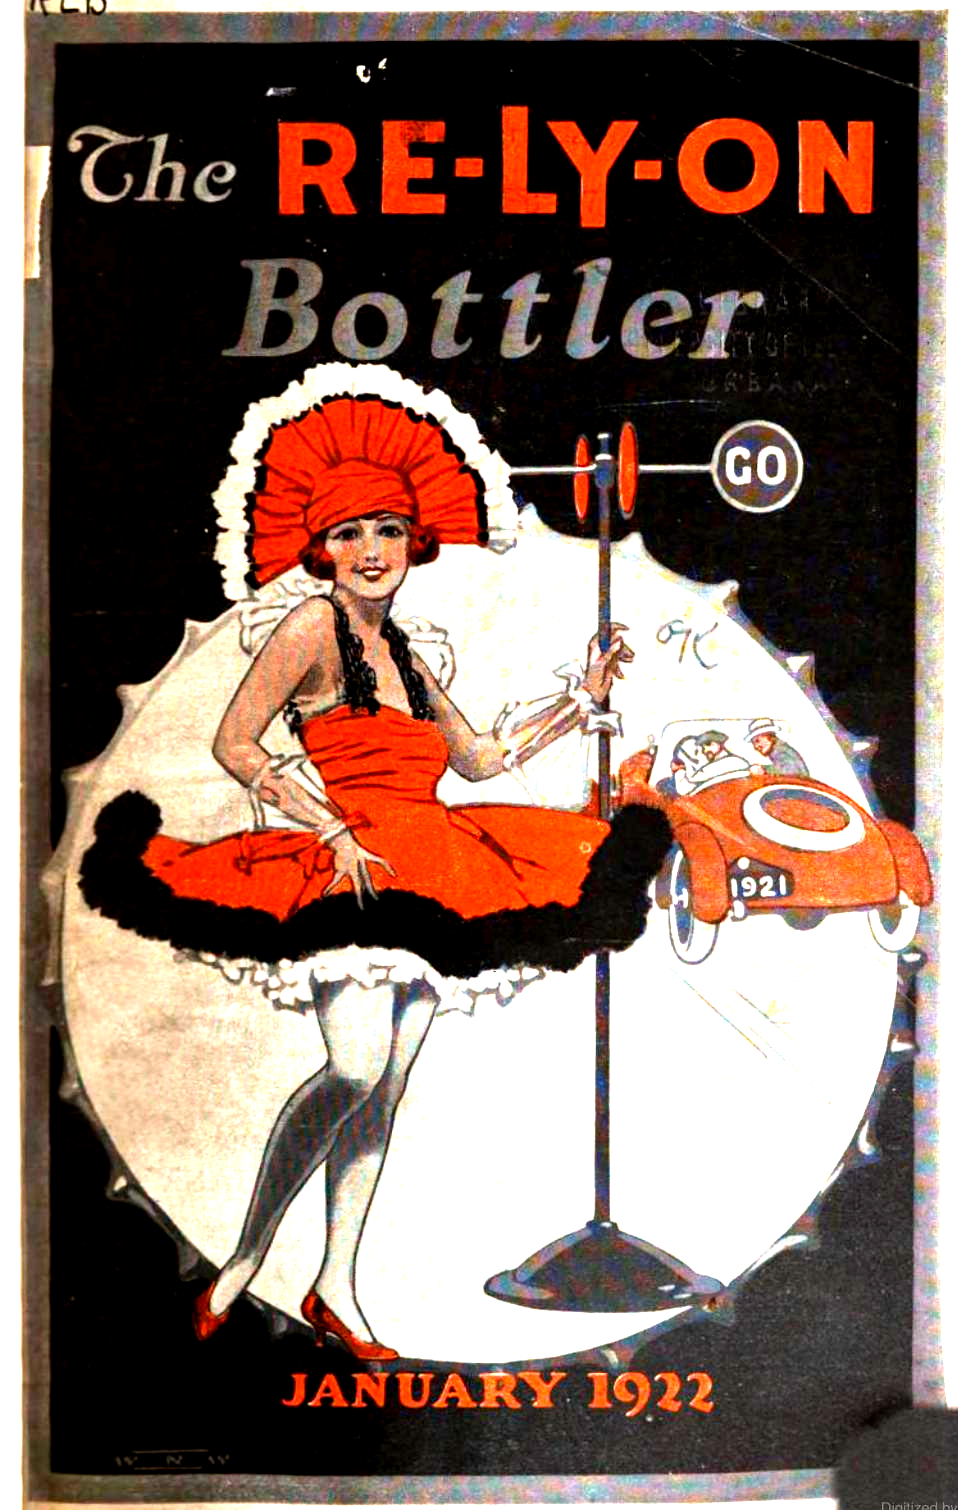 Moxie American Bottle Co 1922 (Source).jpeg